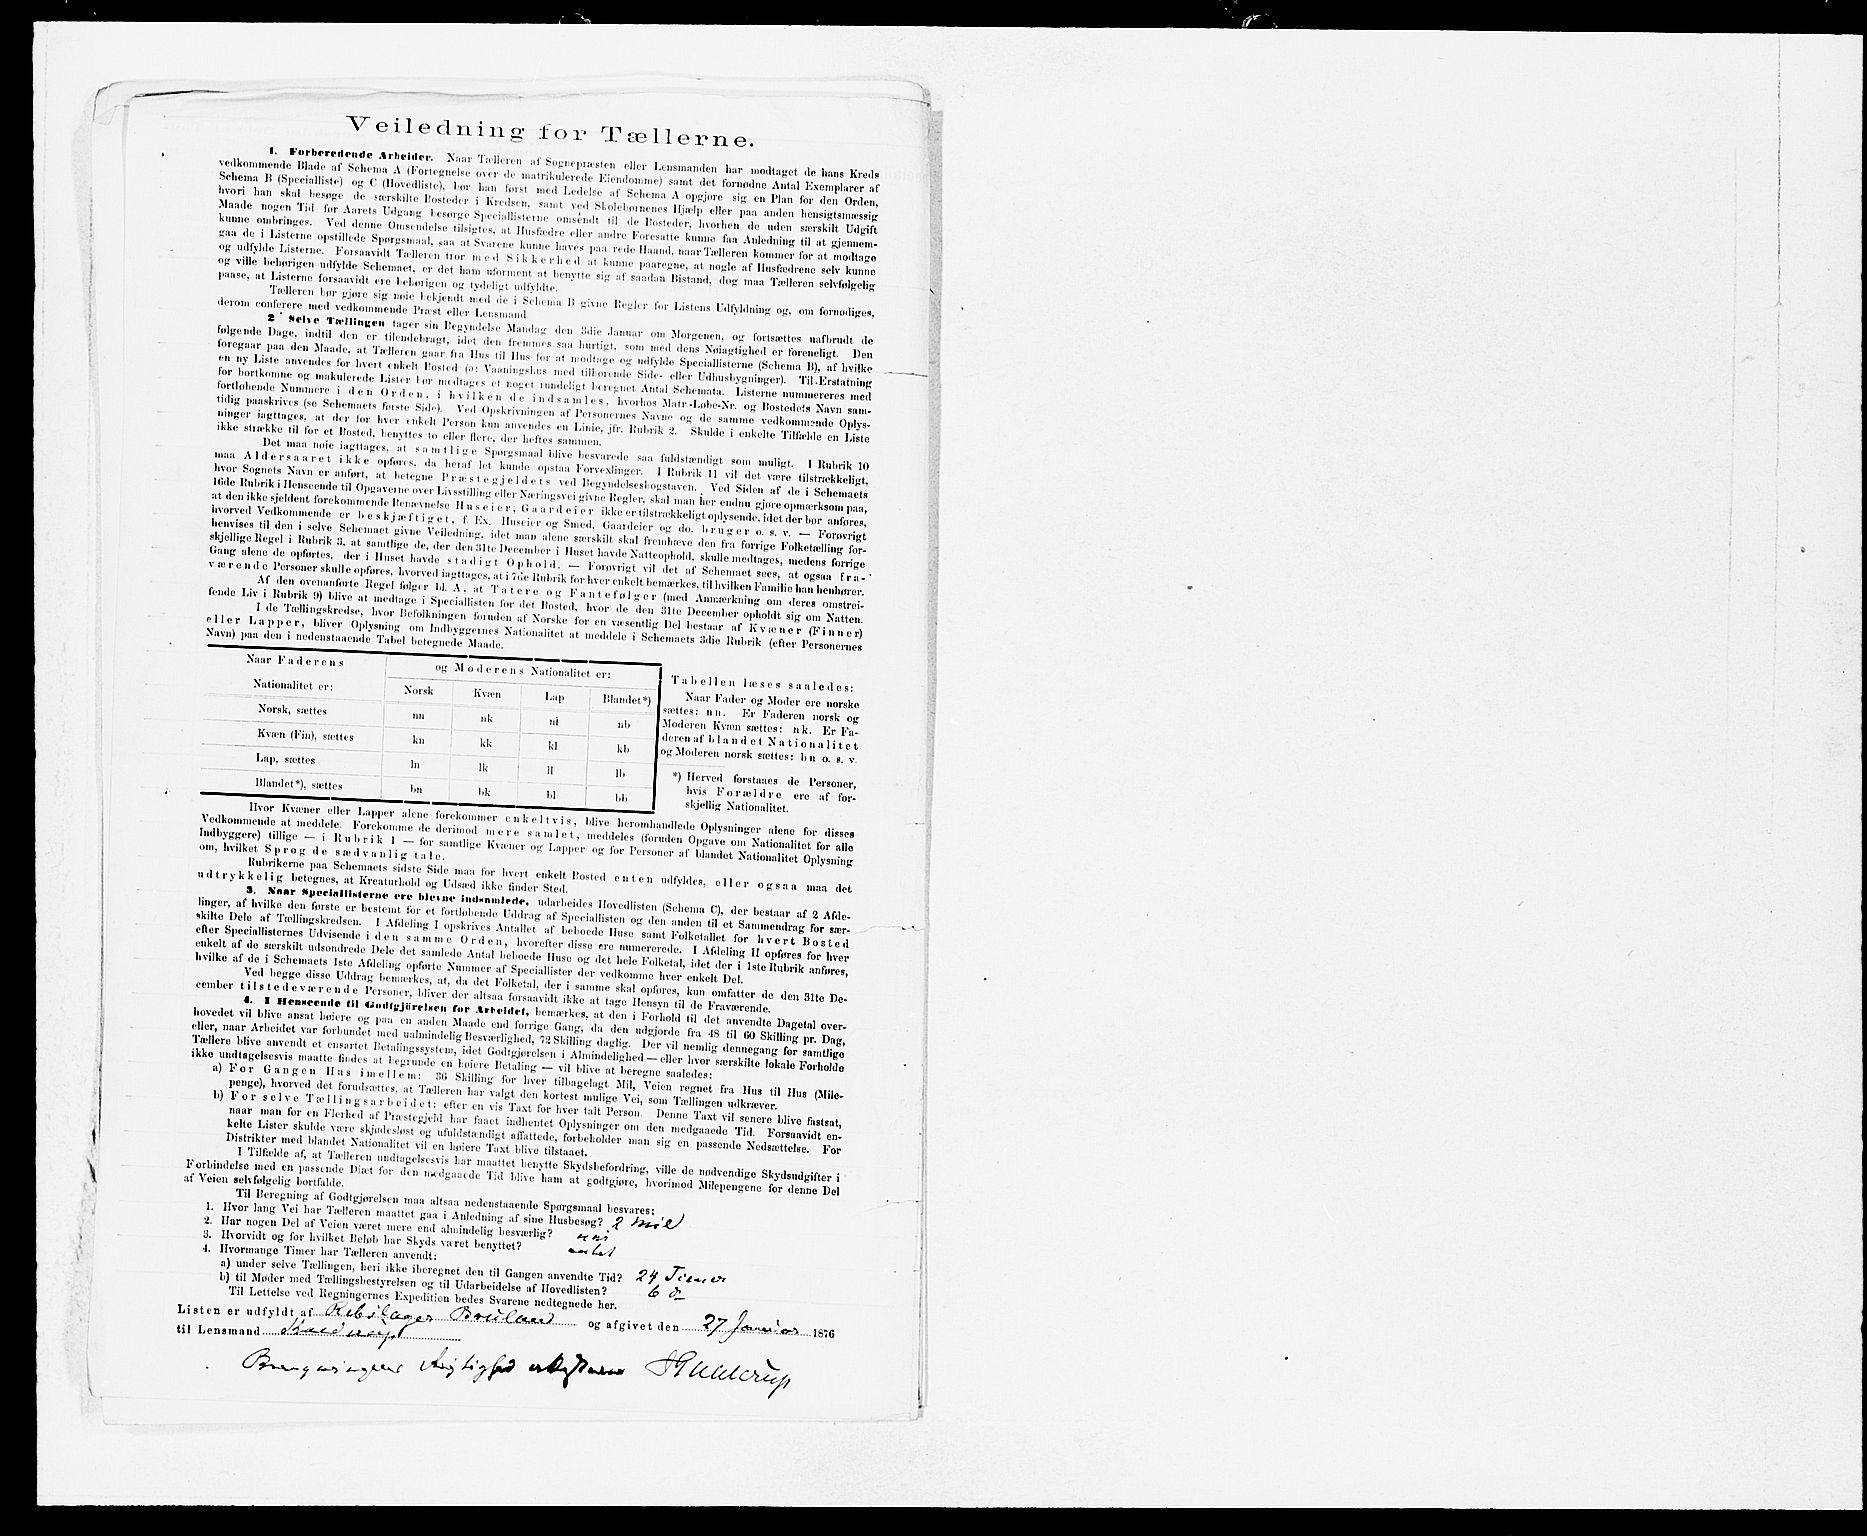 SAB, Folketelling 1875 for 1281L Bergen landdistrikt, Domkirkens landsokn og Sandvikens landsokn, 1875, s. 16